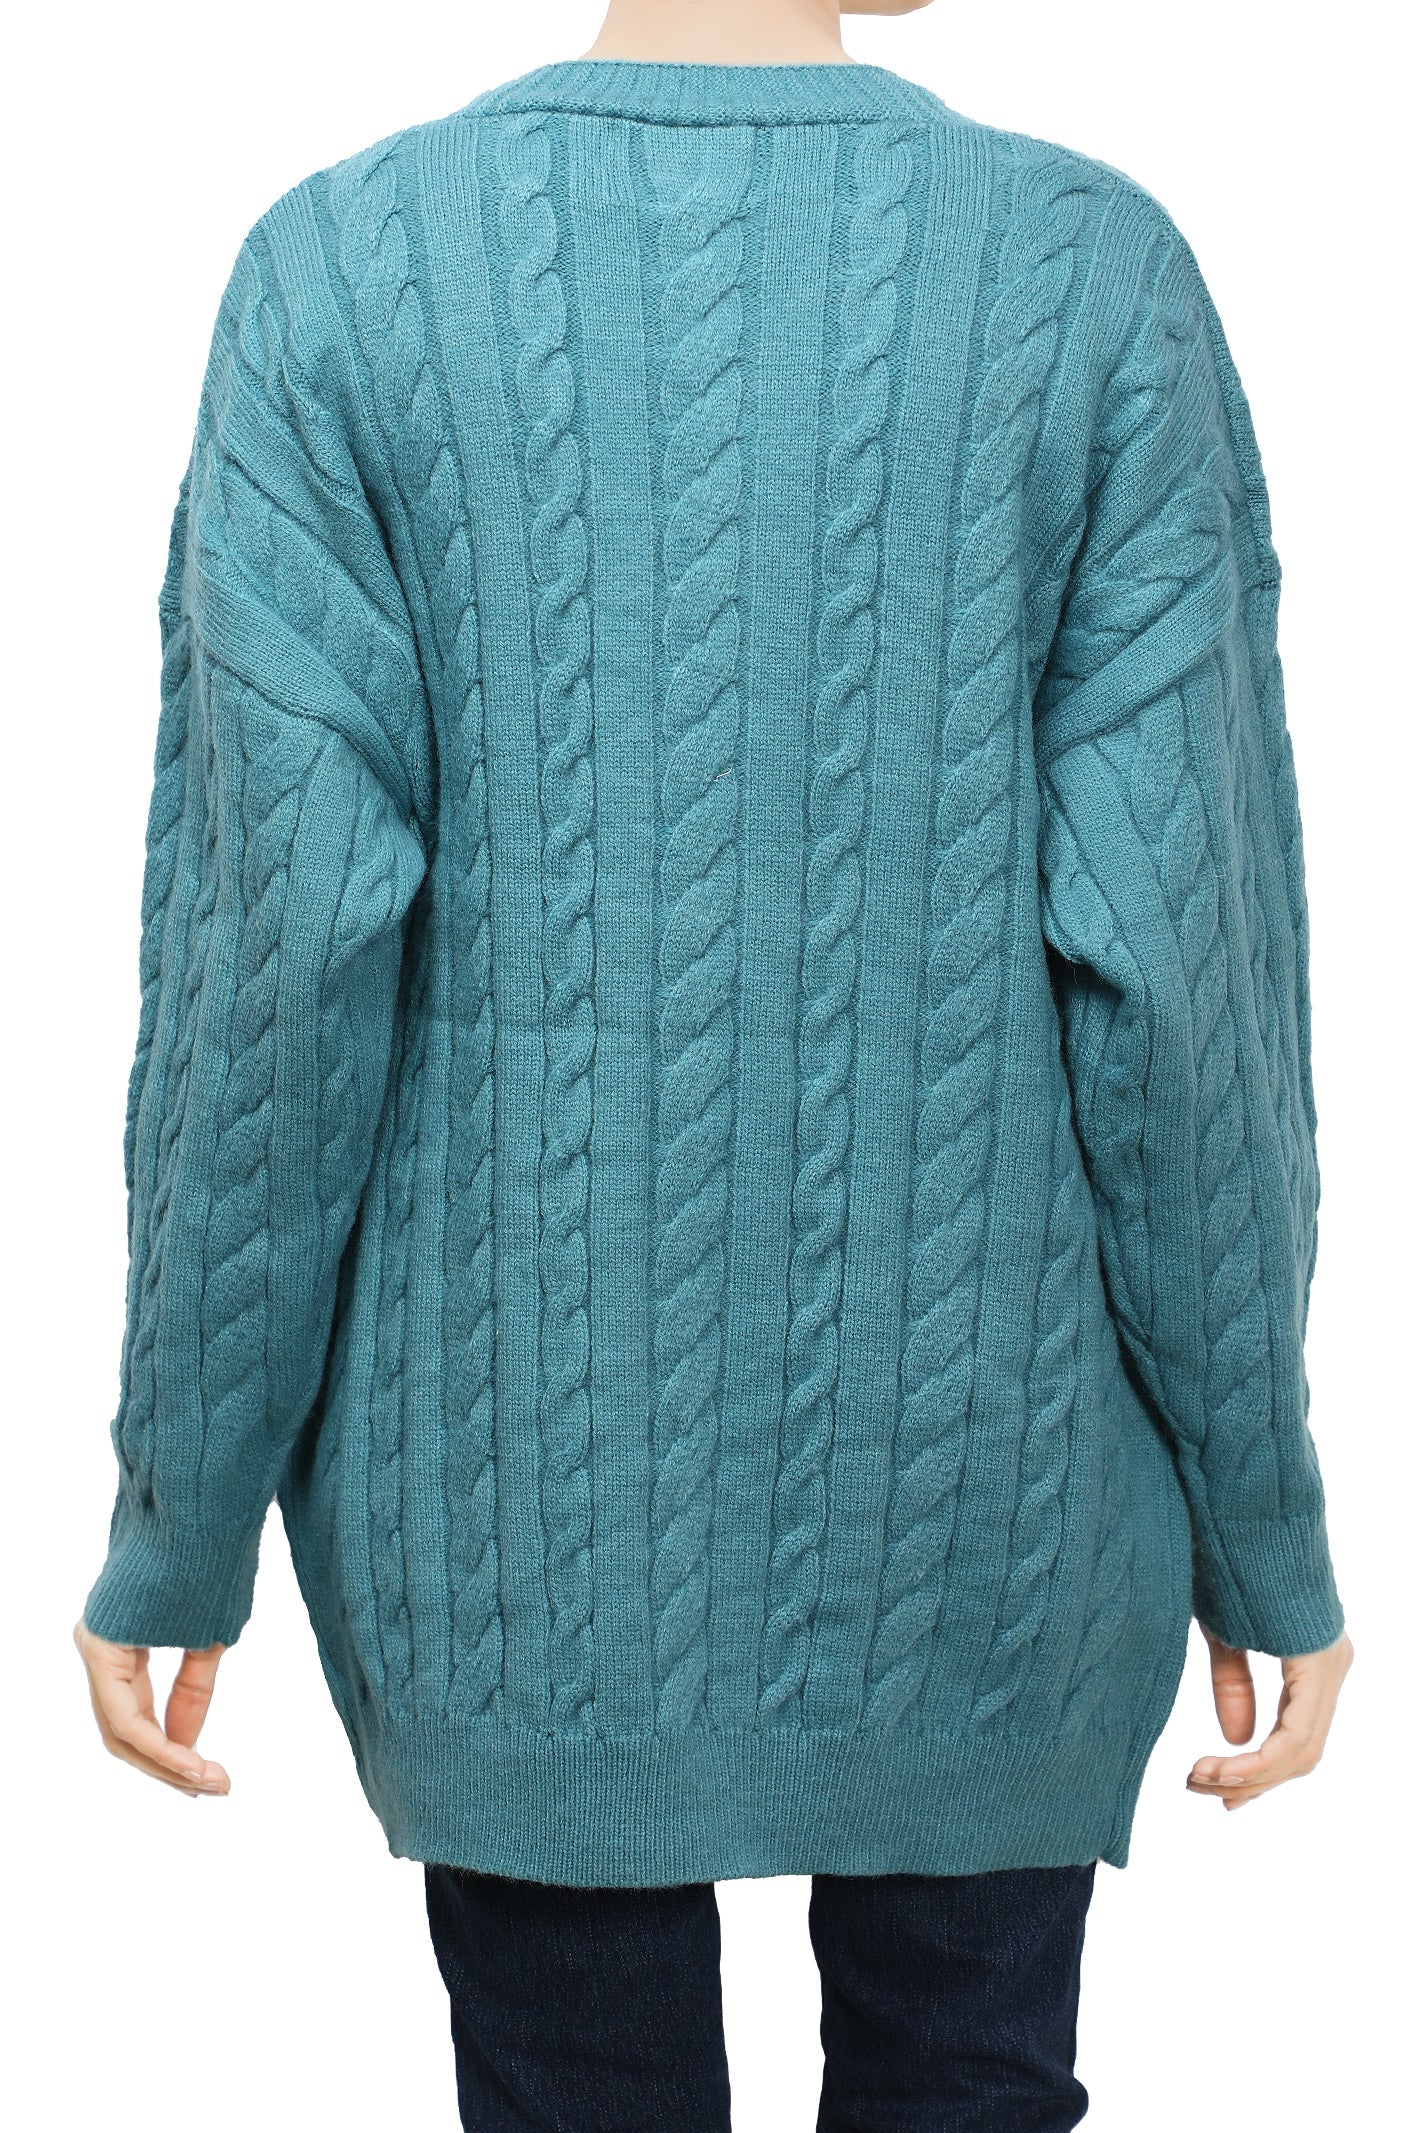 Ladies Sweater SKU: SL981-BLUE - Diners